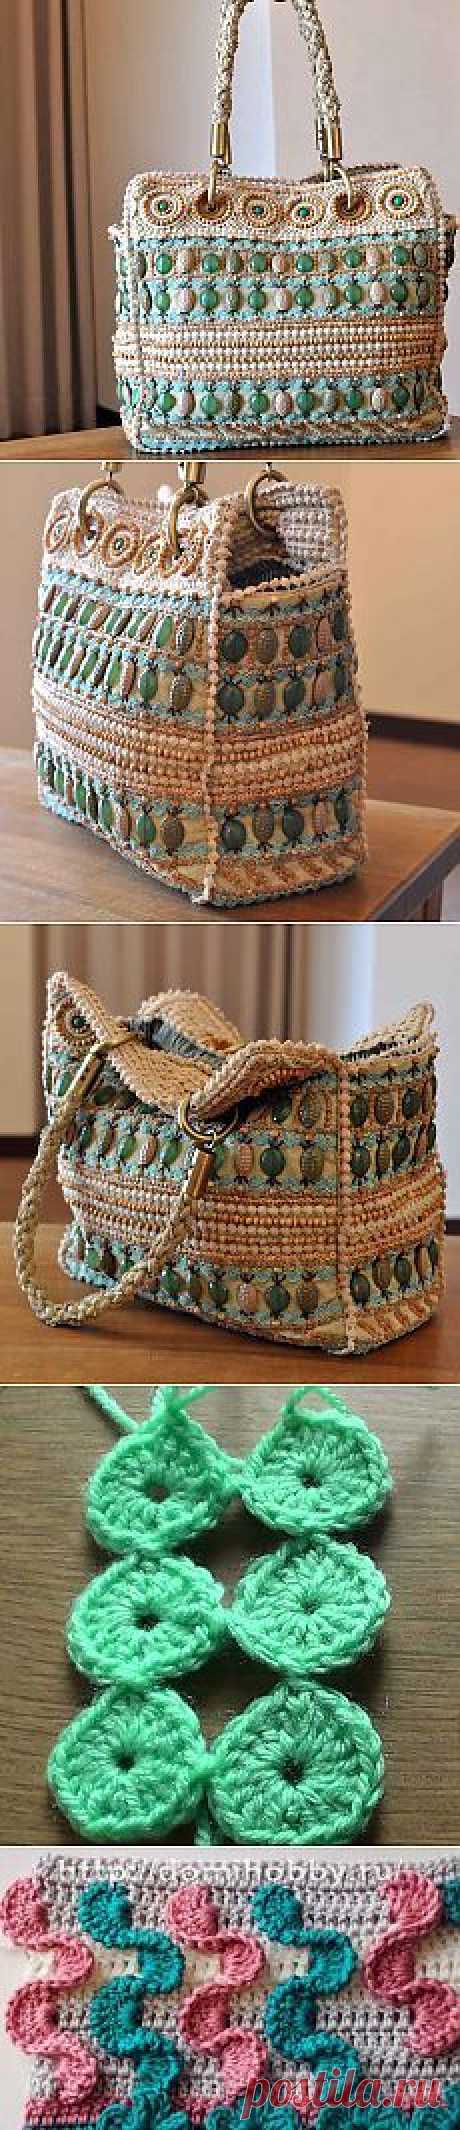 Красивая дизайнерская сумка от Jamin PUECH - Рукоделие